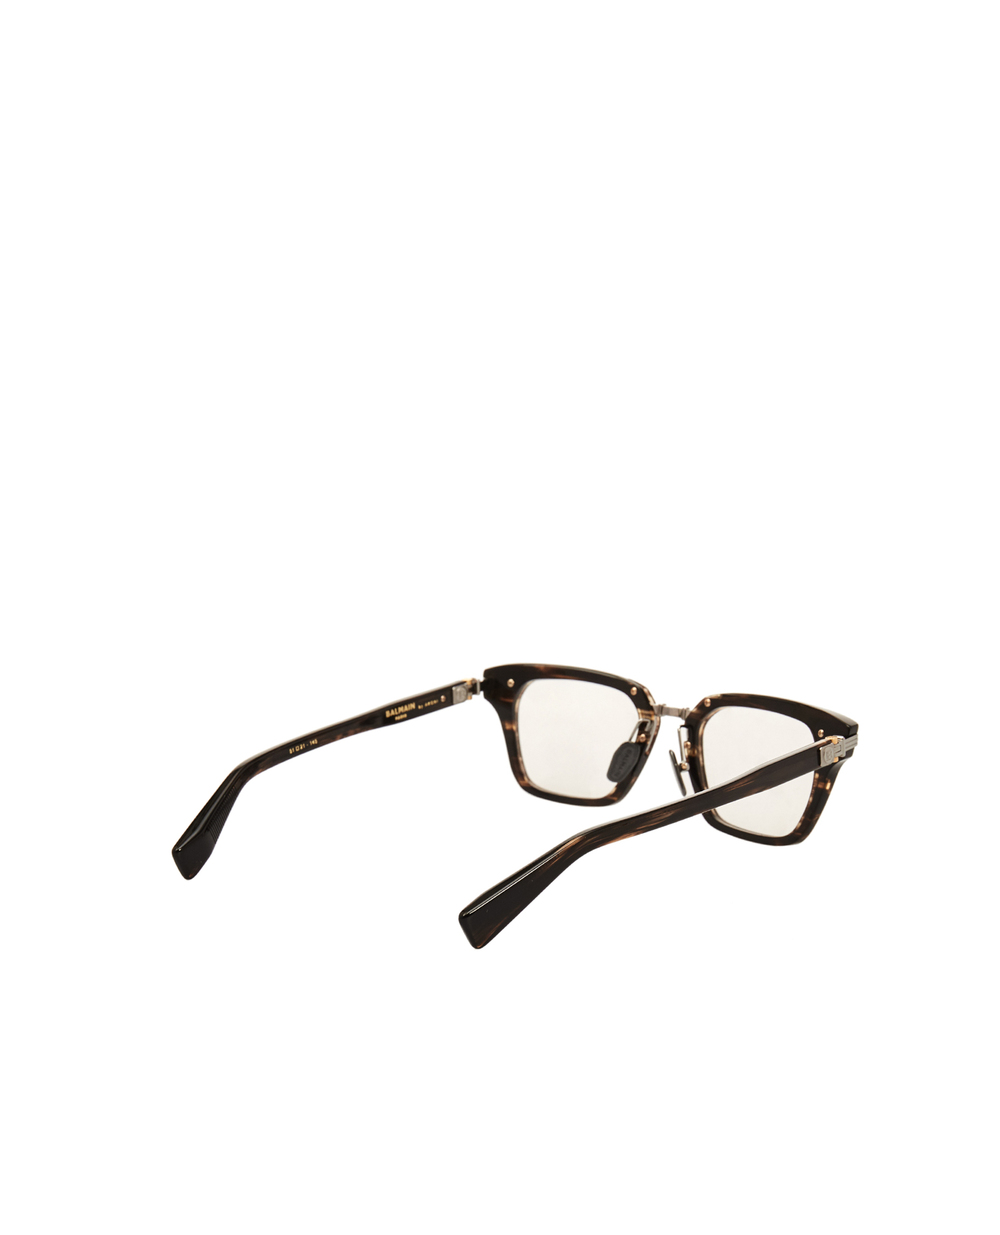 Солнцезащитные очки Balmain BPX-112B-51, коричневый цвет • Купить в интернет-магазине Kameron